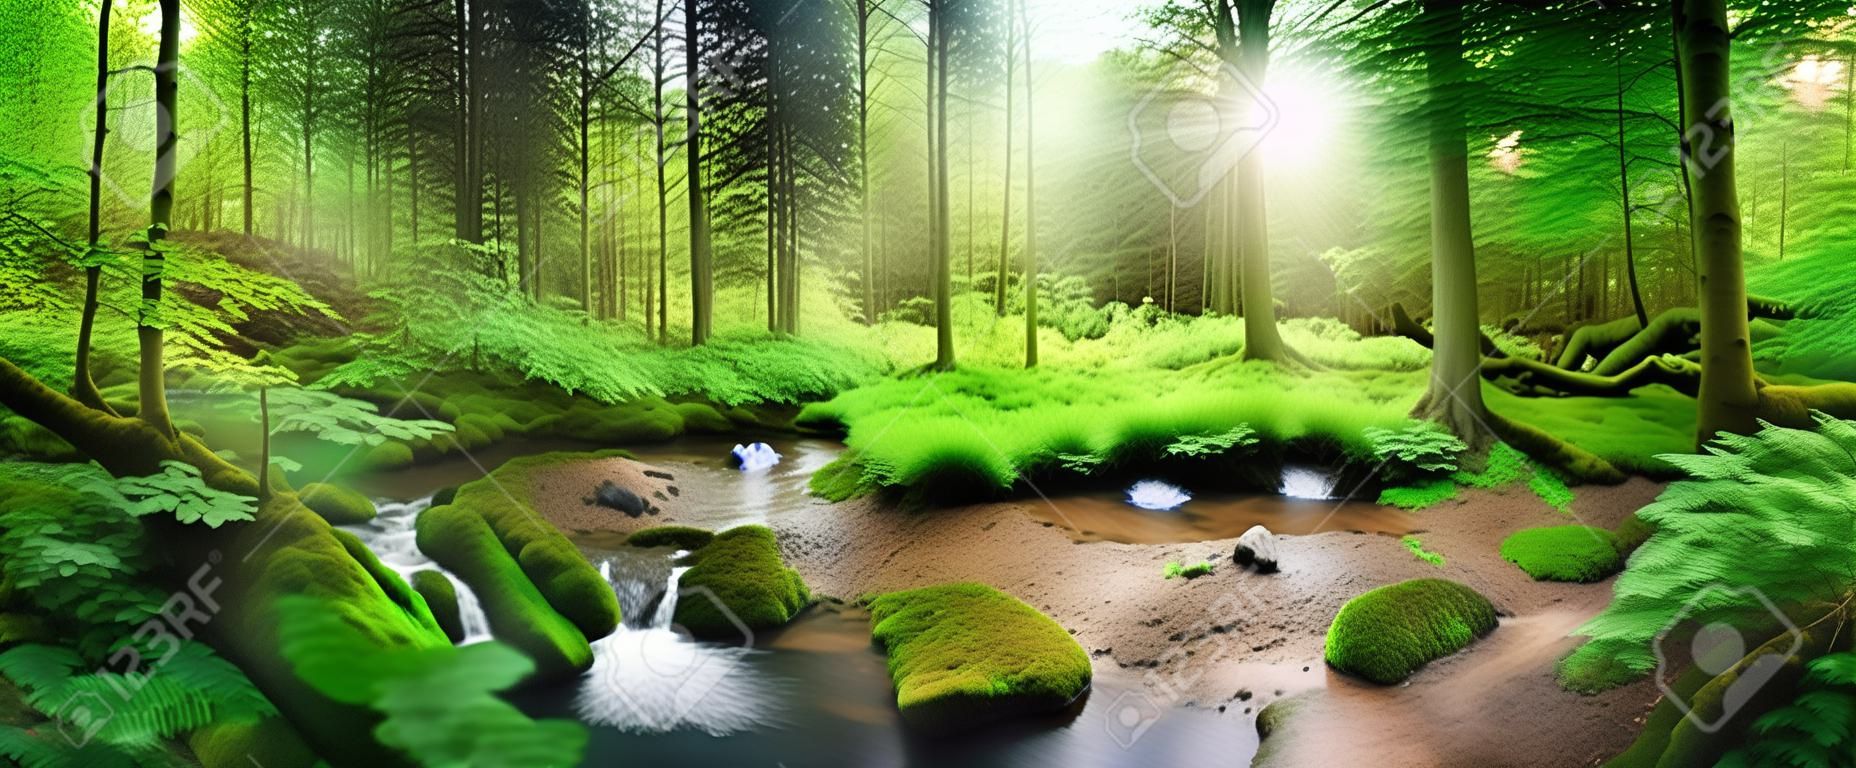 Enchanting Panoramawaldlandschaft mit weichem Licht durch das Laub fällt, einen Strom mit ruhigem Wasser und einem Reiher